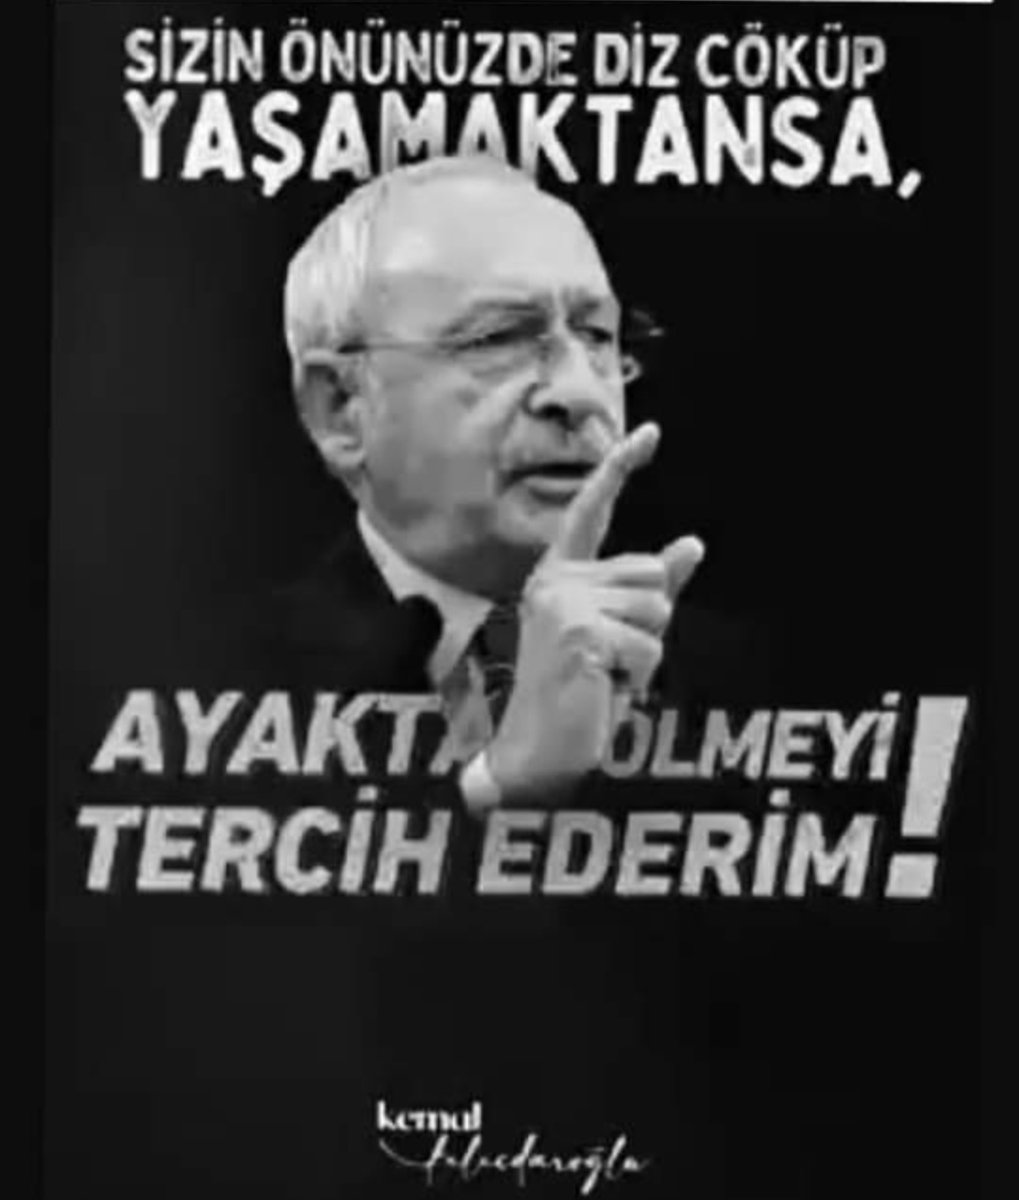 #KılıçdaroğluNeSöyledi 
Bu düzenin kurucusu sarayla müzakere edilmez, mücadele edilir..!
@kilicdarogluk